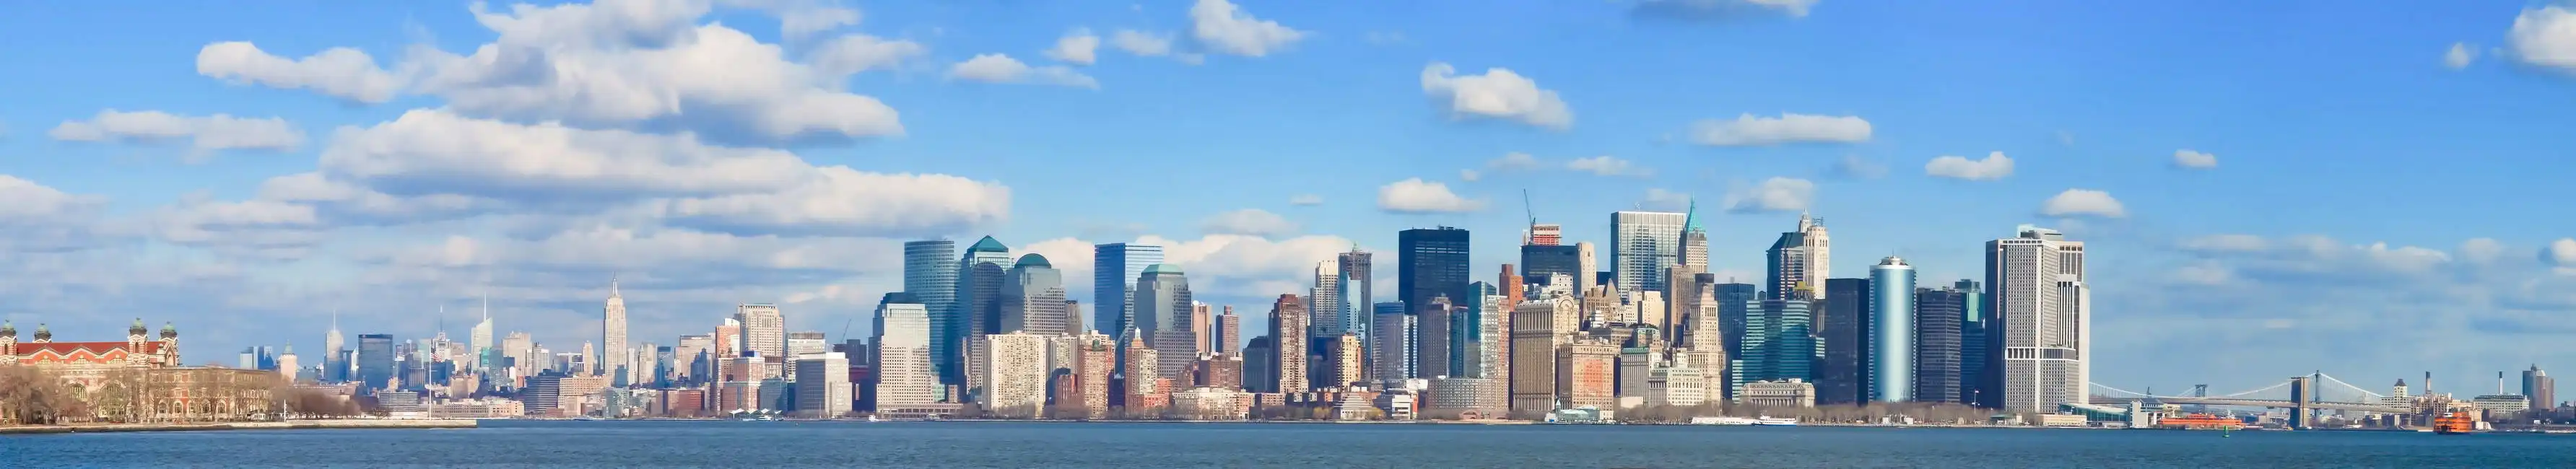 Unknown: New York City - Manhattan skyline